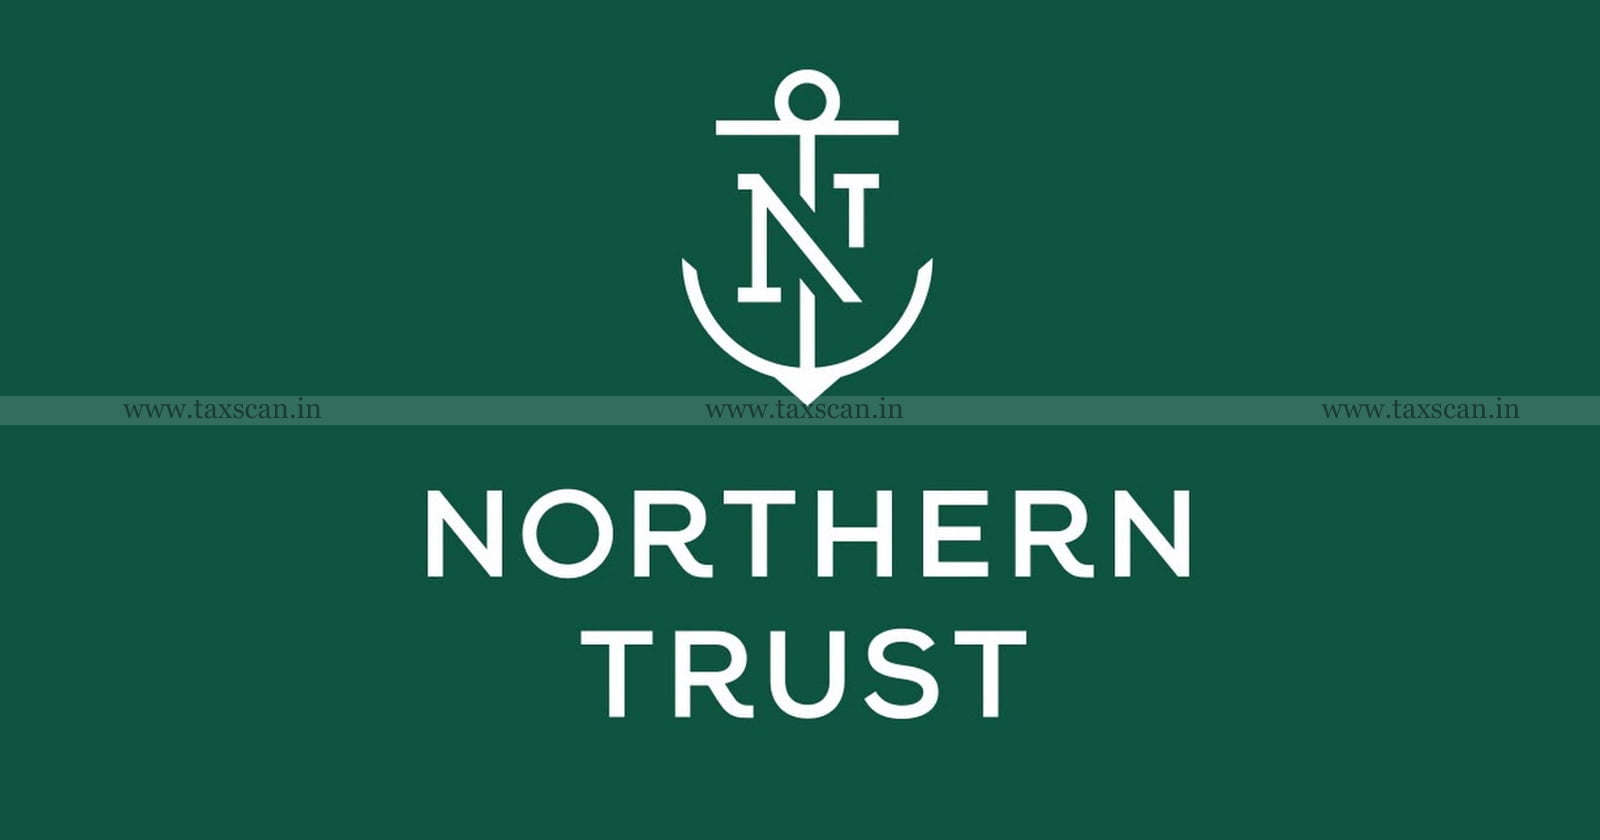 Northern Trust - B. Com Vacancy - B. Com Vacancy in Northern Trust - Vacancy - Job Scan - B. Com Vacancies - B. Com Job Vacancies - taxscan